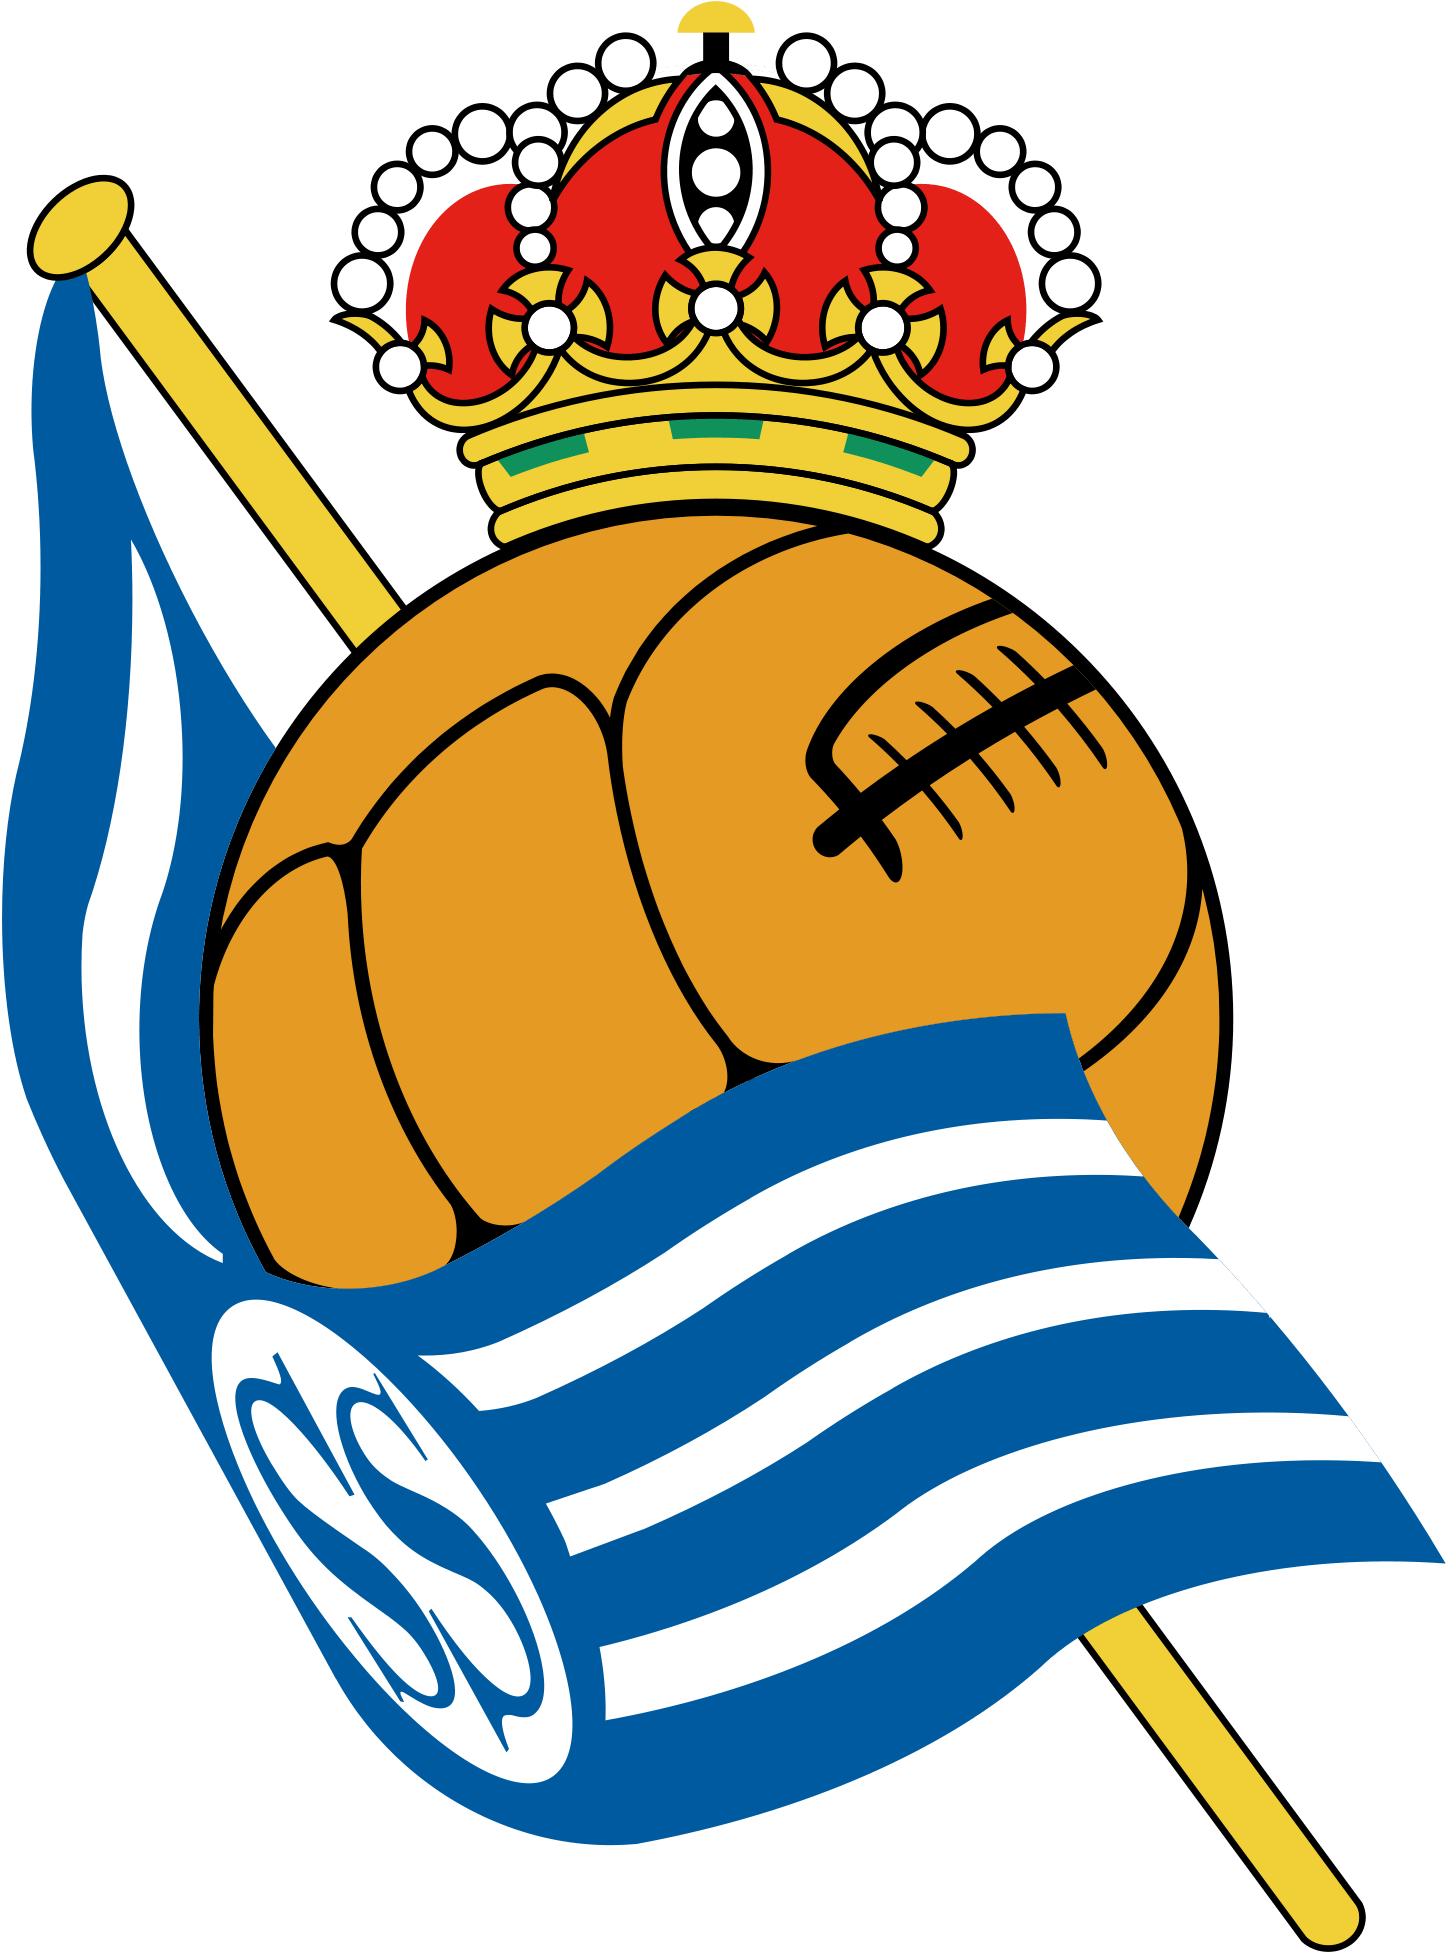 Real Sociedad Logo - Real Sociedad San Sebastian (2000x2000)